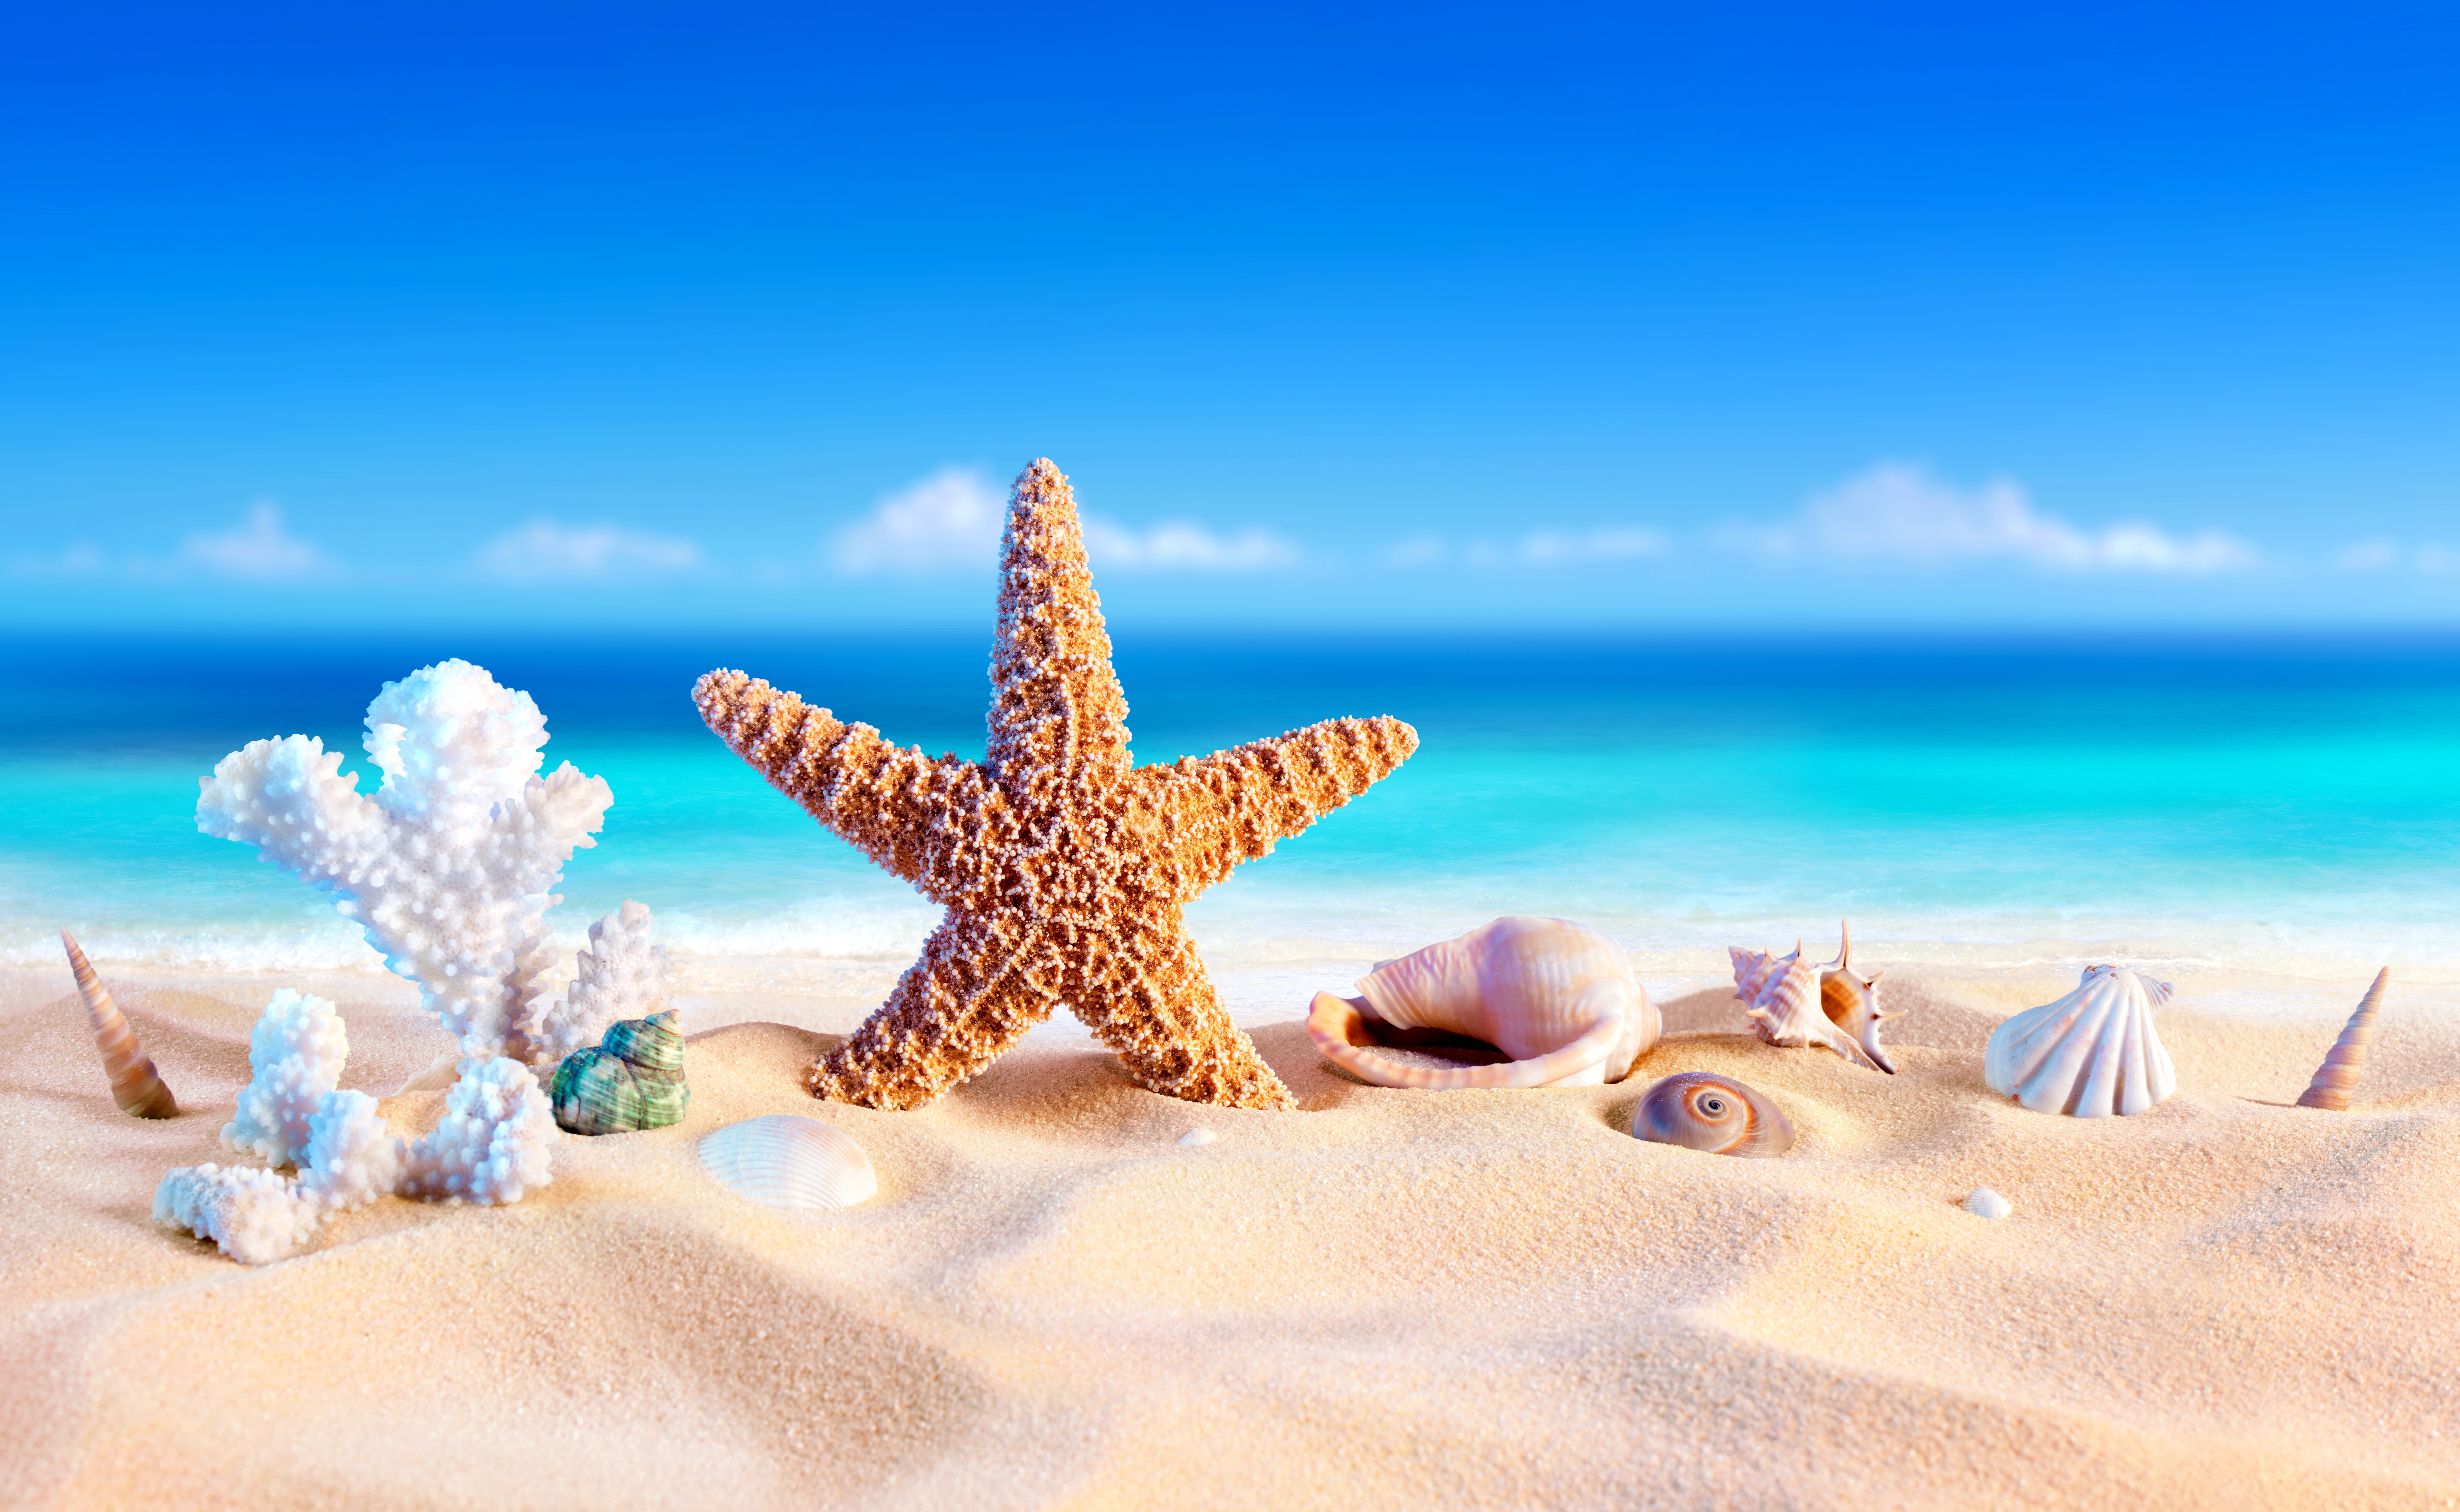 Скачать обои бесплатно Пляж, Песок, Лето, Ракушки, Морская Звезда, Художественные картинка на рабочий стол ПК